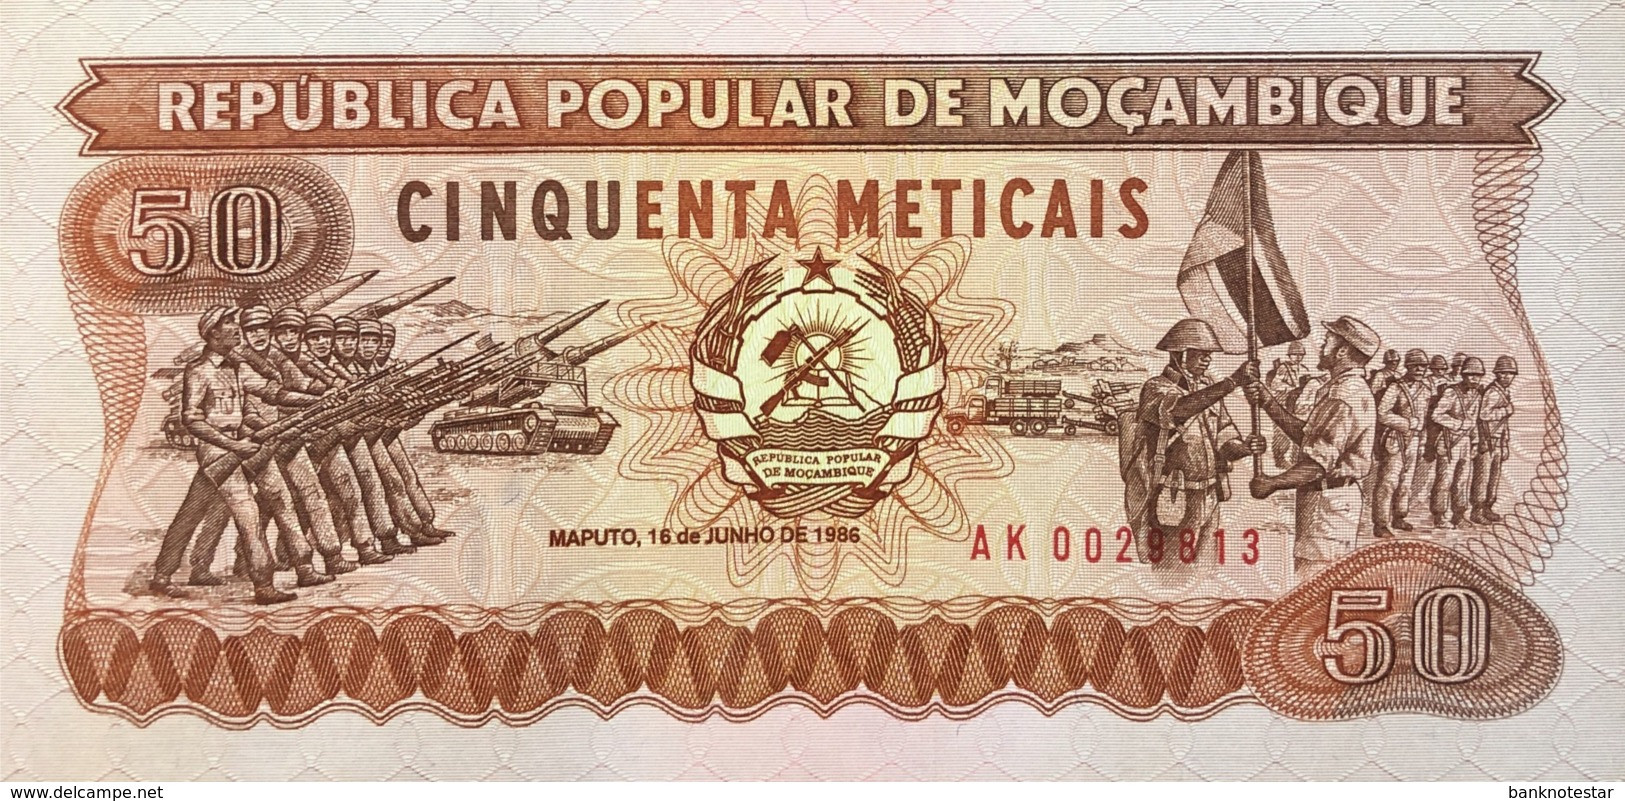 Mozambique 50 Meticais, P-129b (16.6.1986) - UNC - Low 002xxxx Serial Number - Mozambique